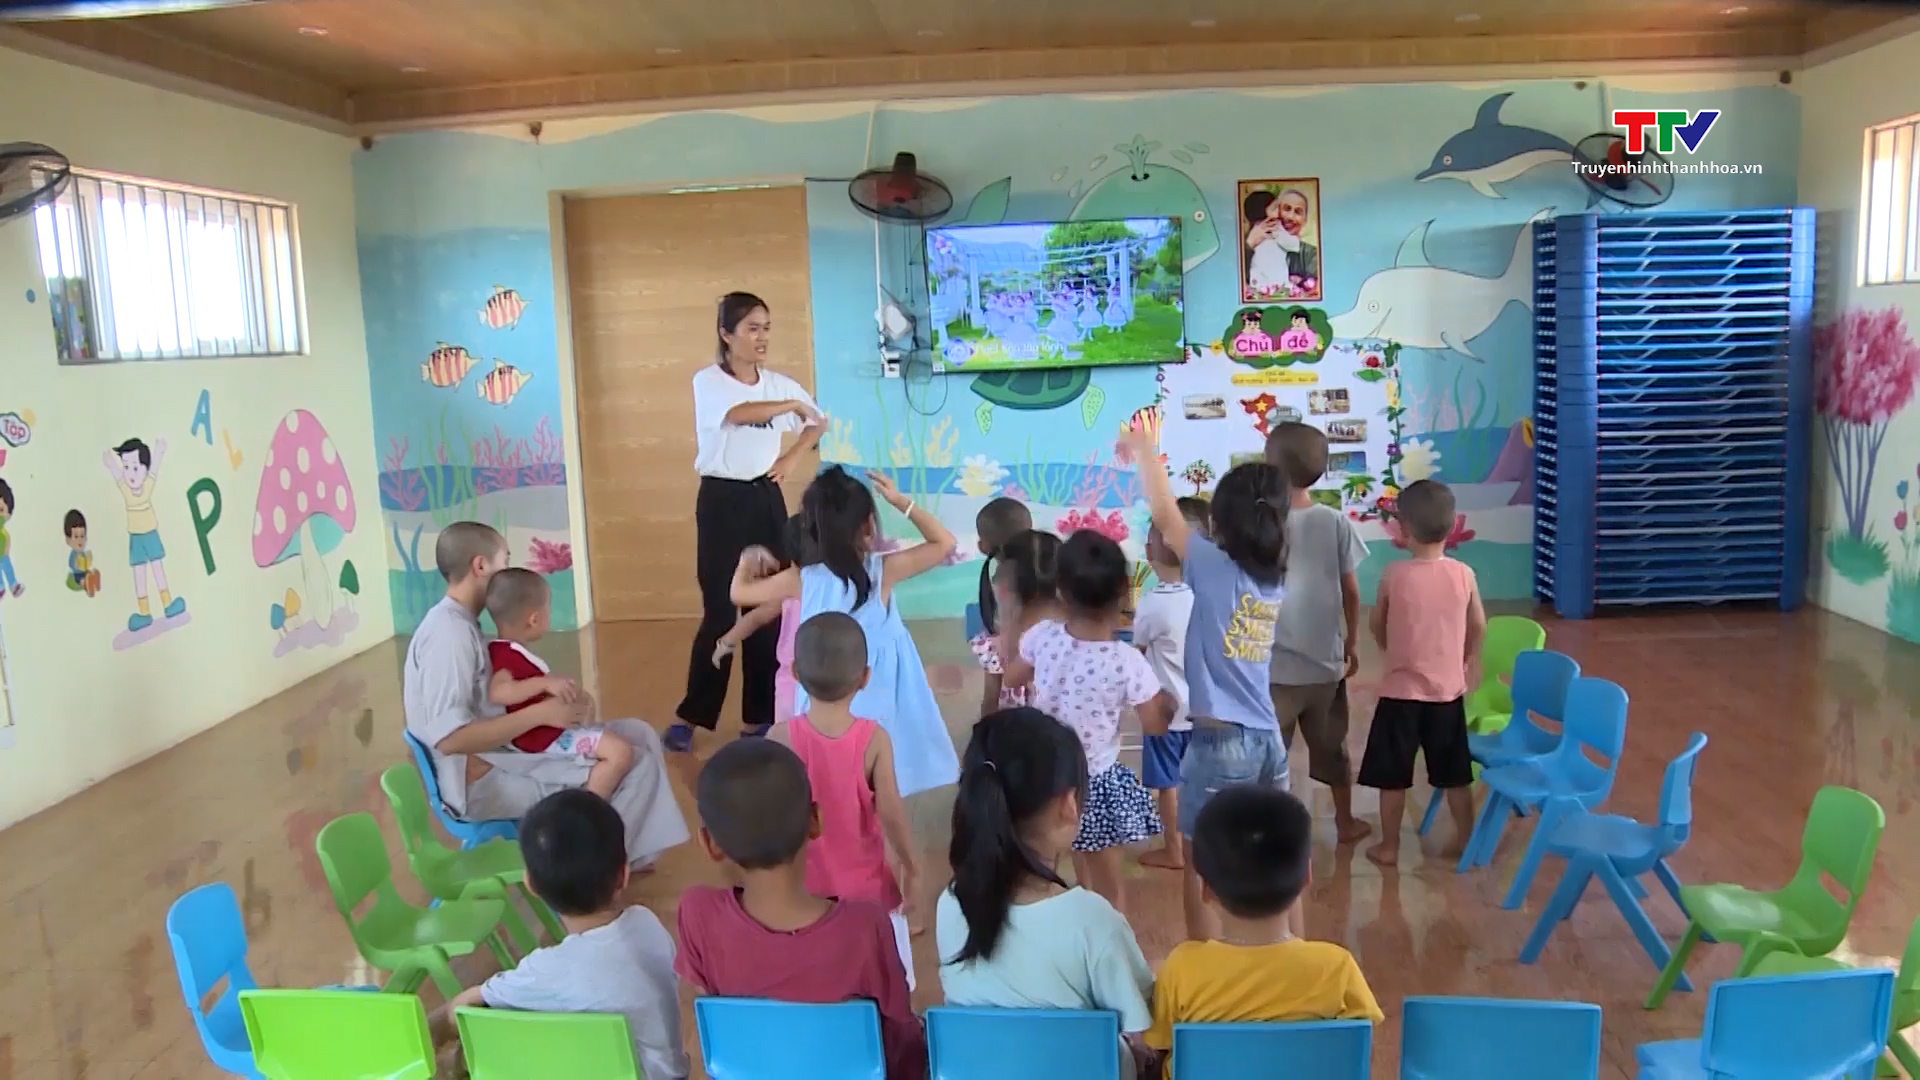 Lớp học mầm non của trẻ mồ côi tại chùa - Ảnh 2.